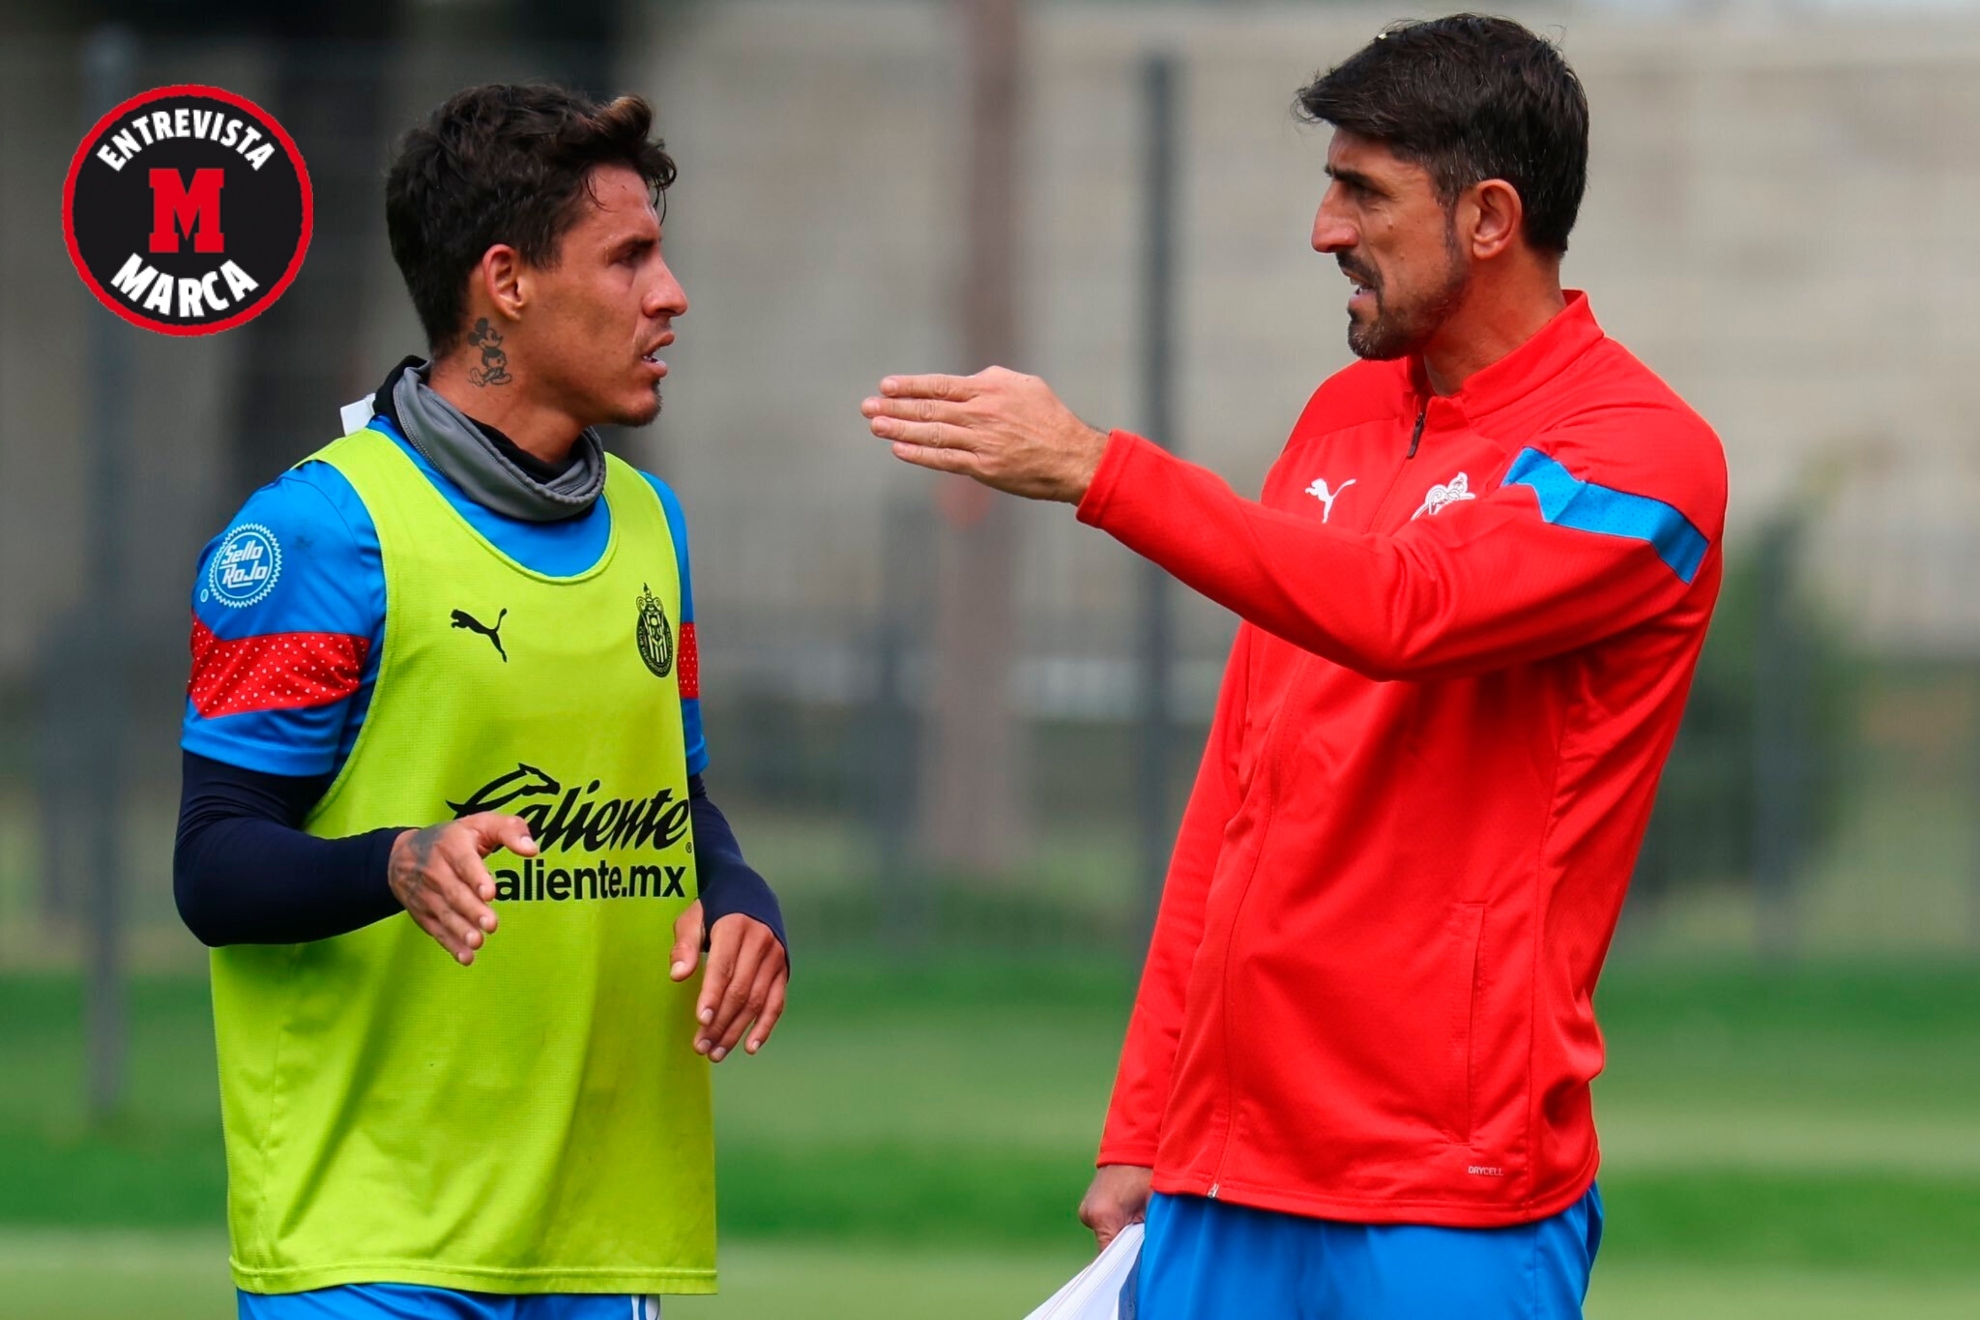 Veljko Paunovic da indicaciones a Cristian Calder�n durante un entrenamiento.